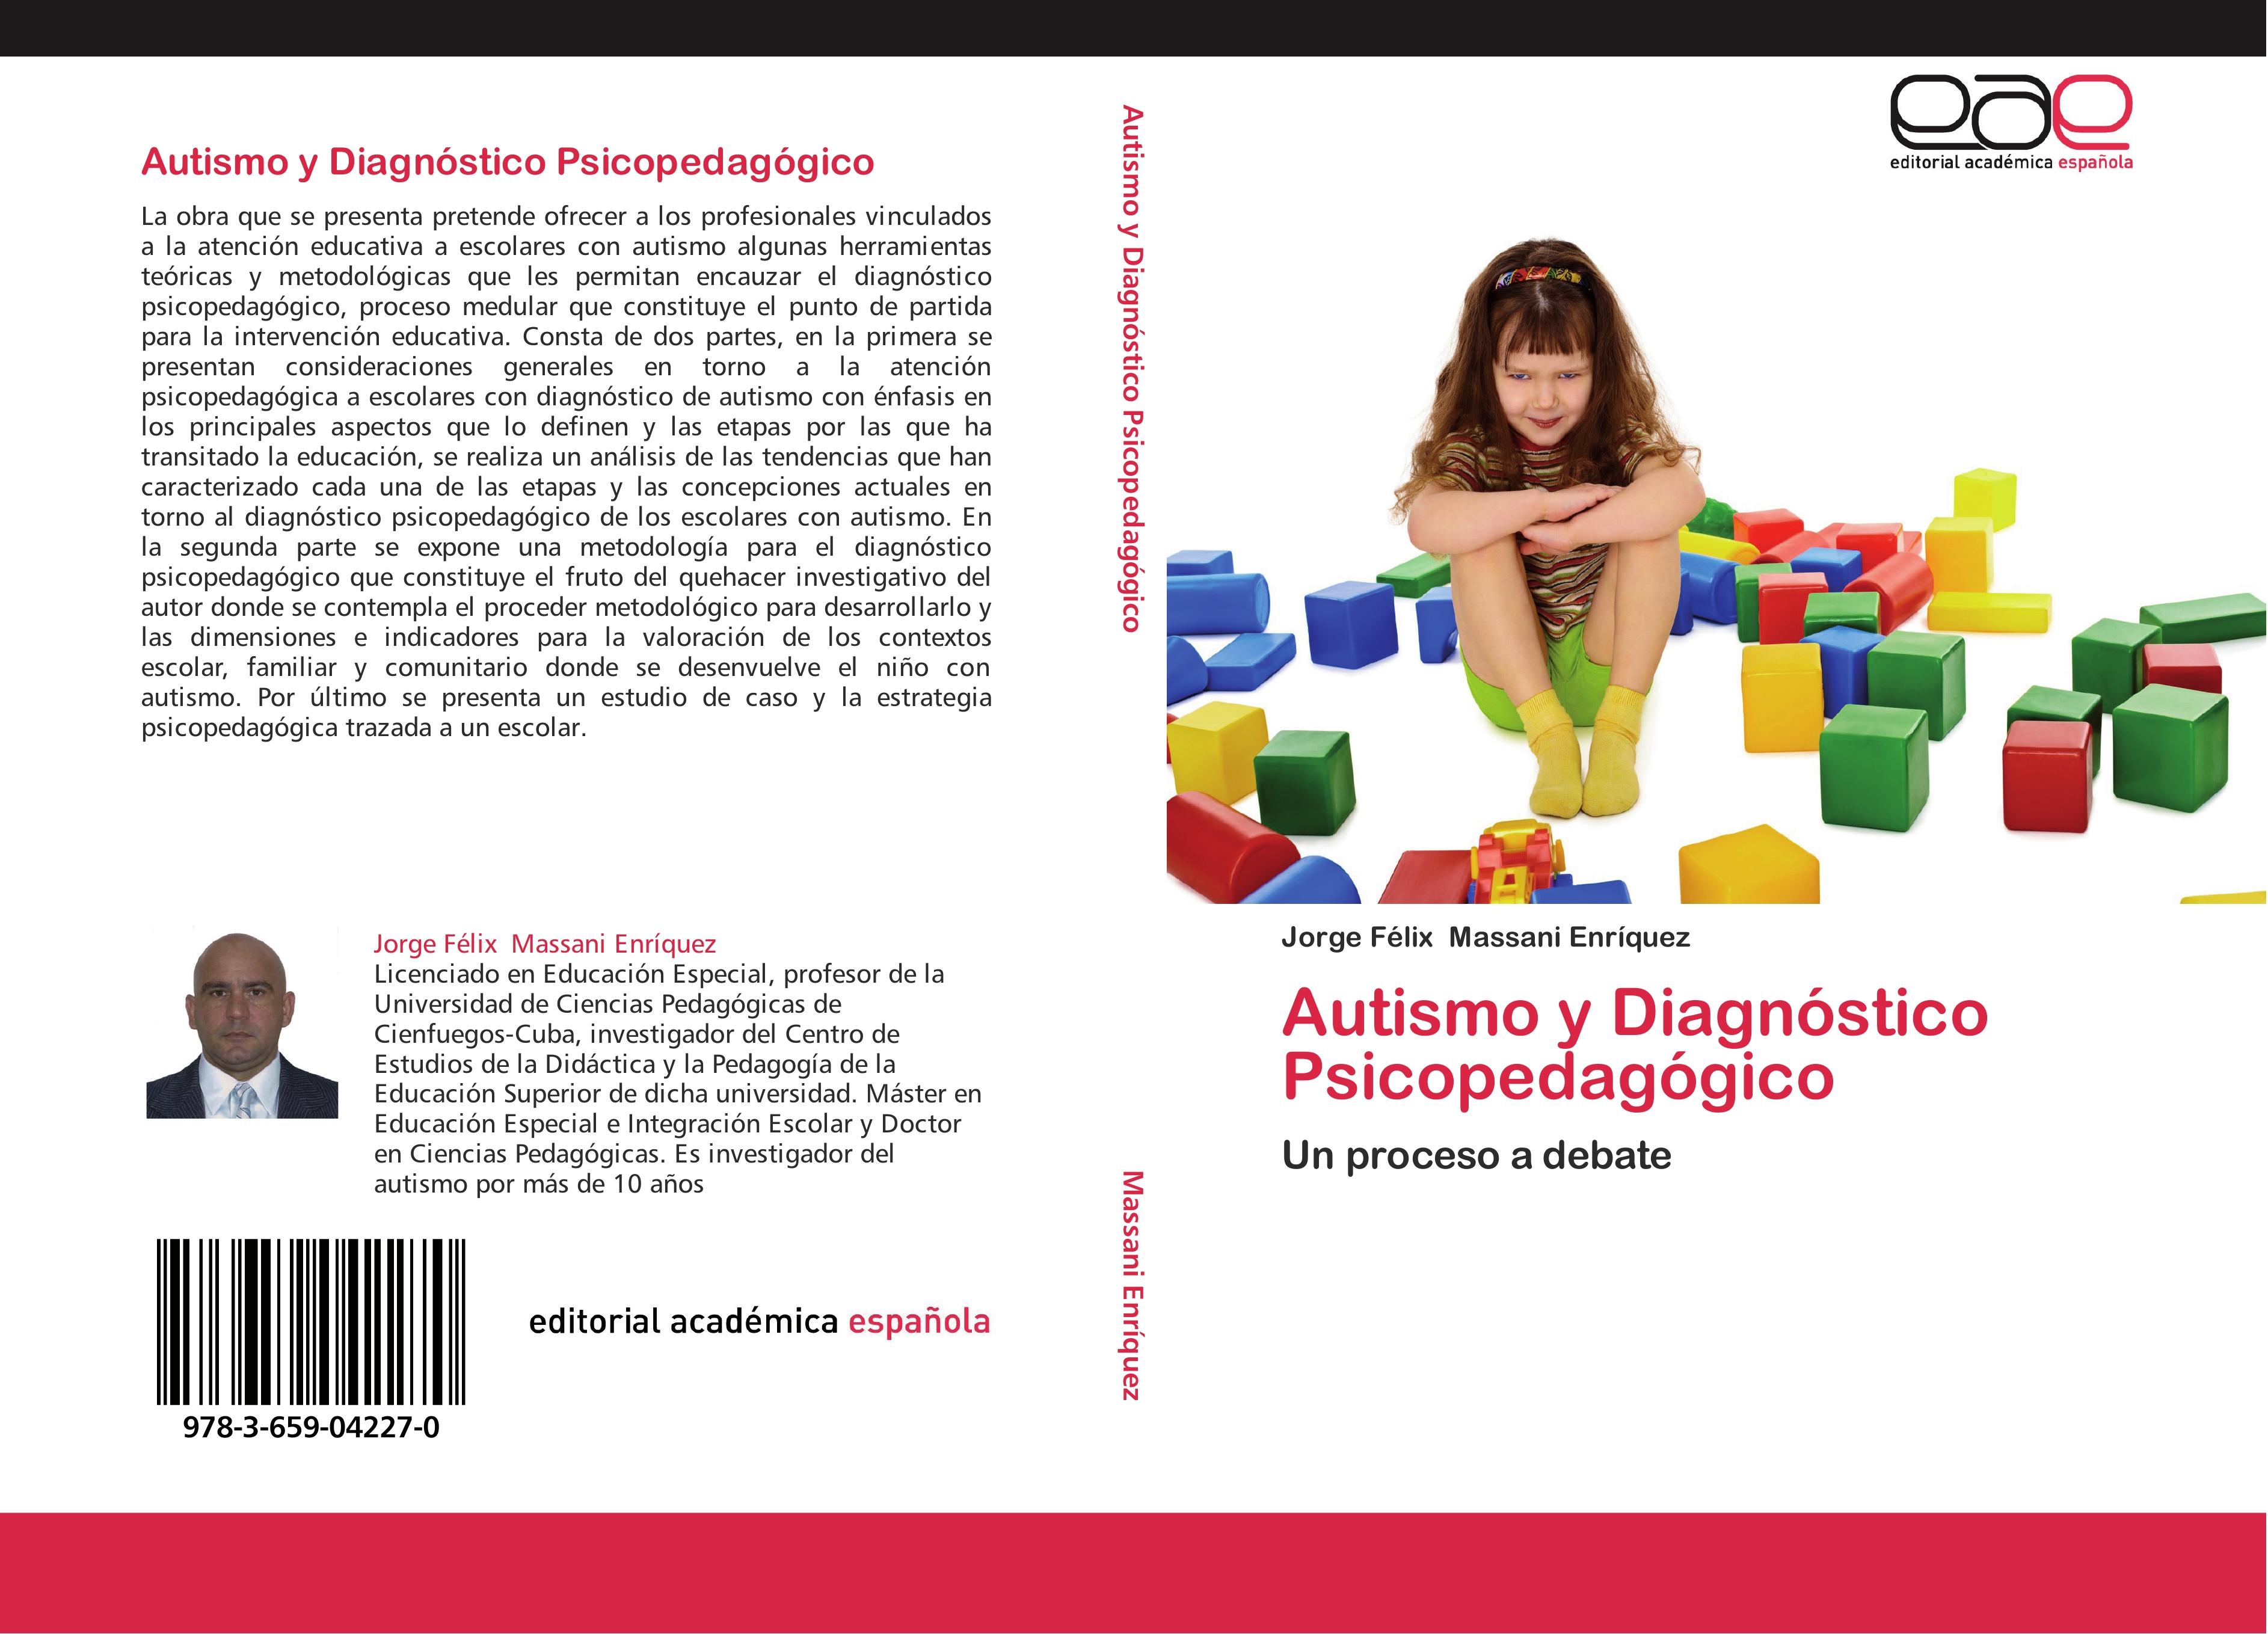 Autismo y Diagnóstico Psicopedagógico - Jorge Félix Massani Enríquez